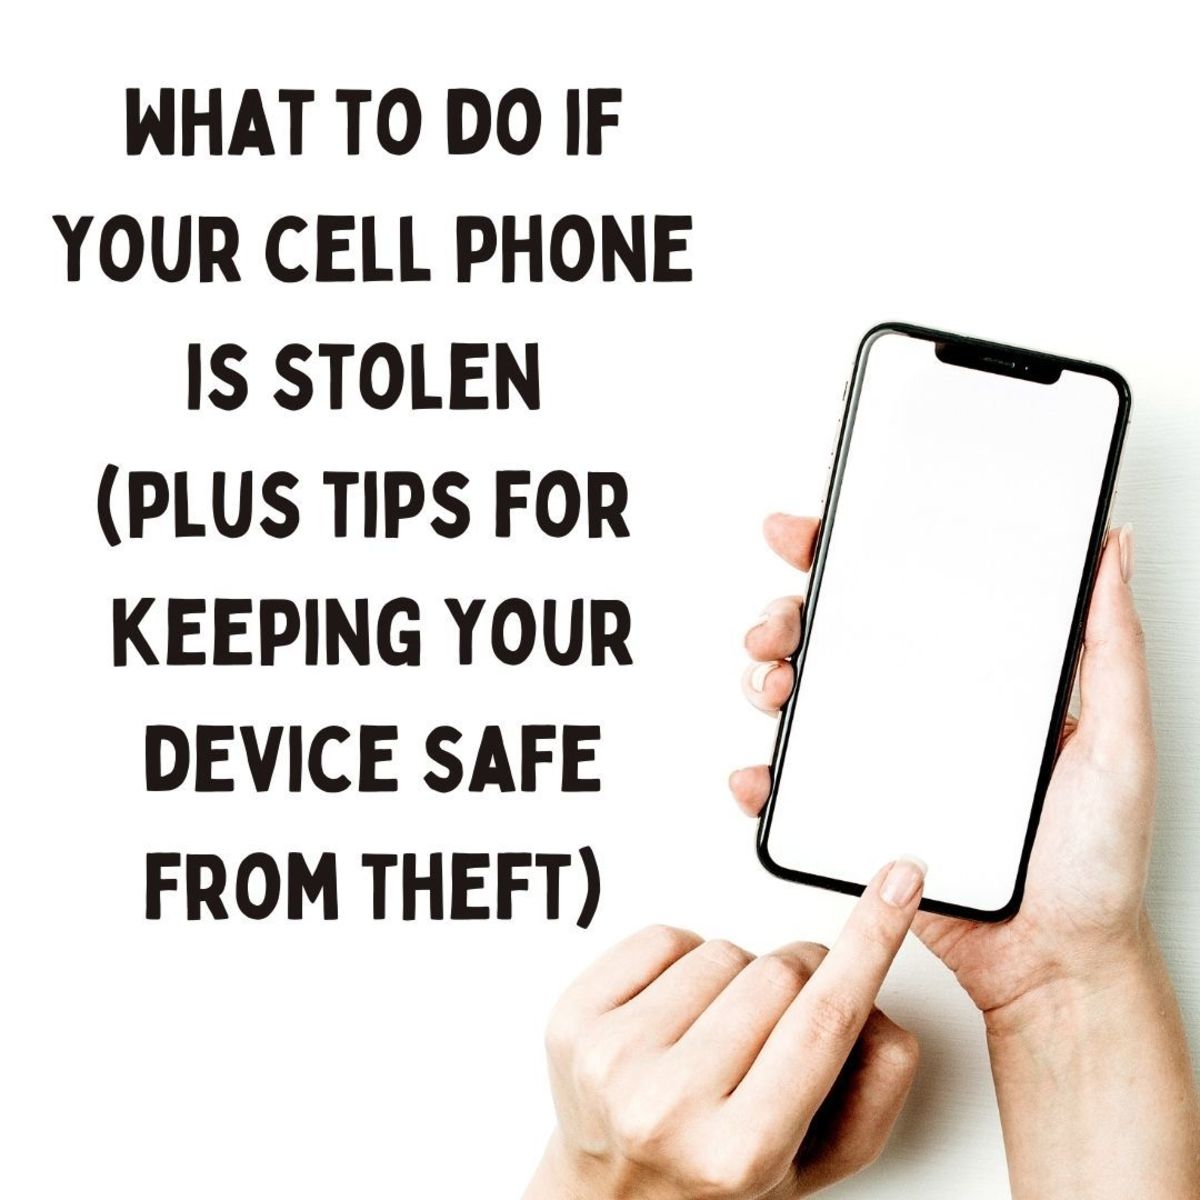 如果您的手机被盗，该怎么办？如何打击盗窃